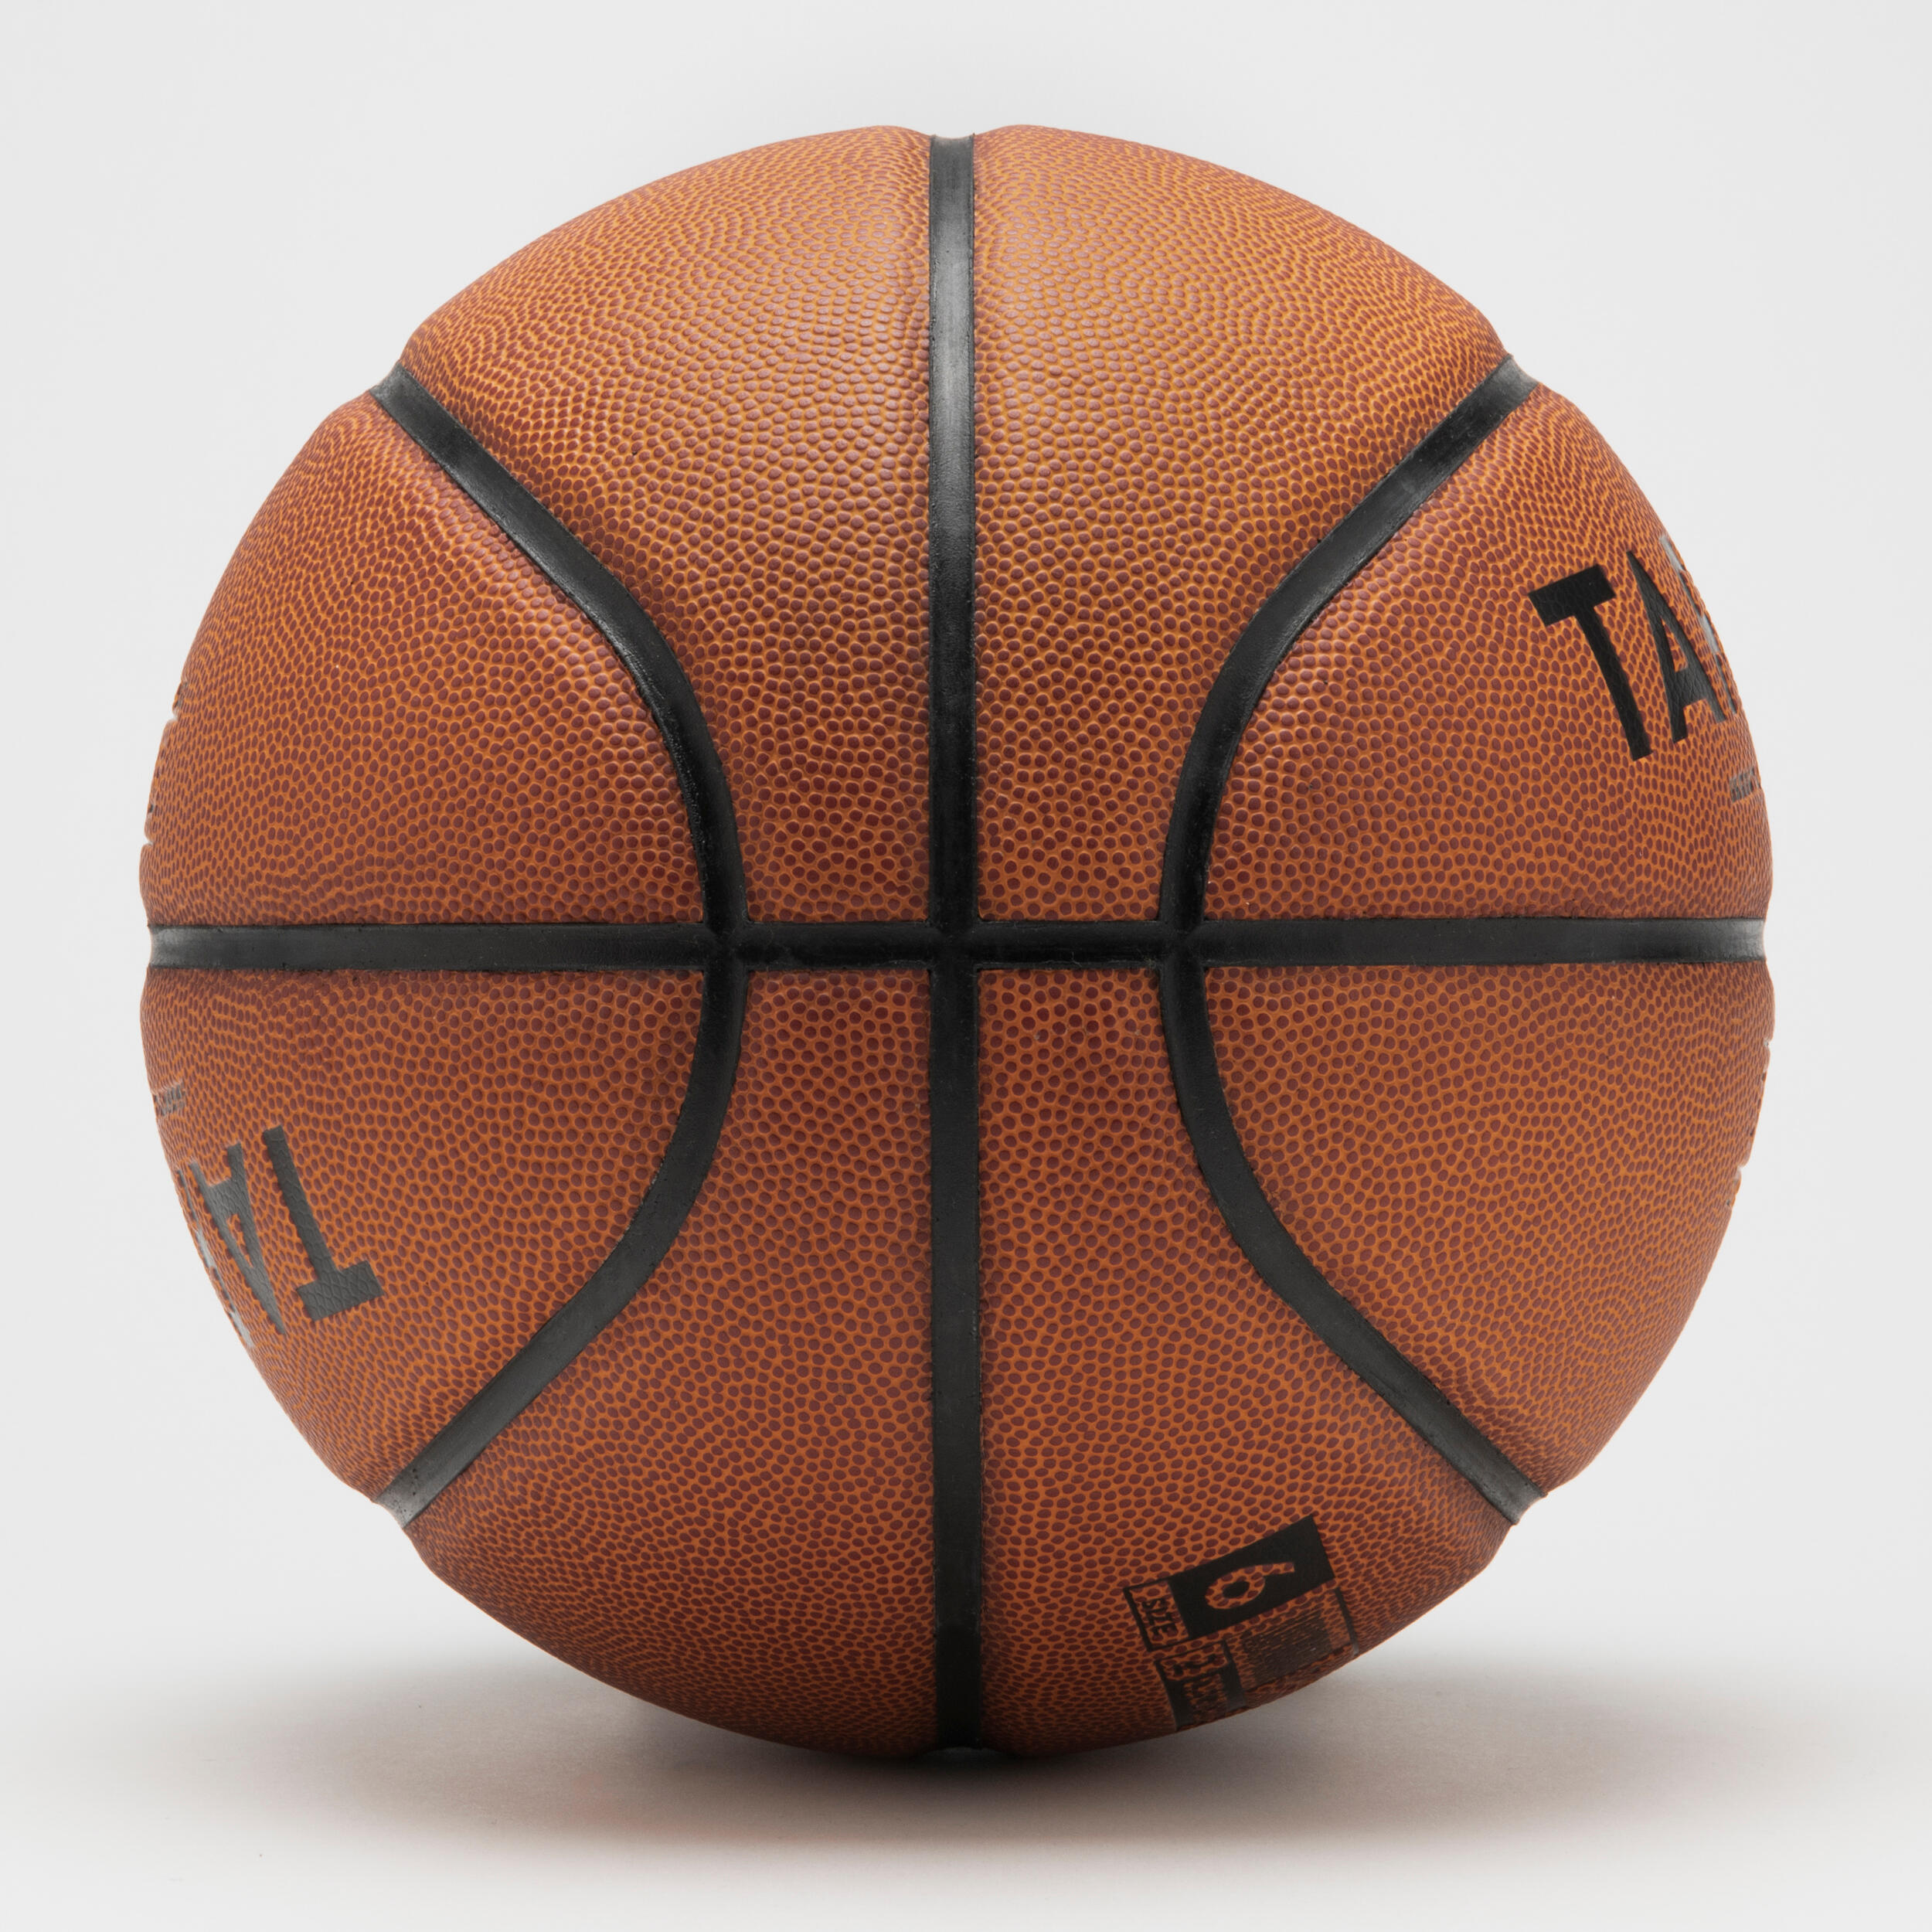 Size 6 FIBA Basketball BT100 Touch - Brown 2/7